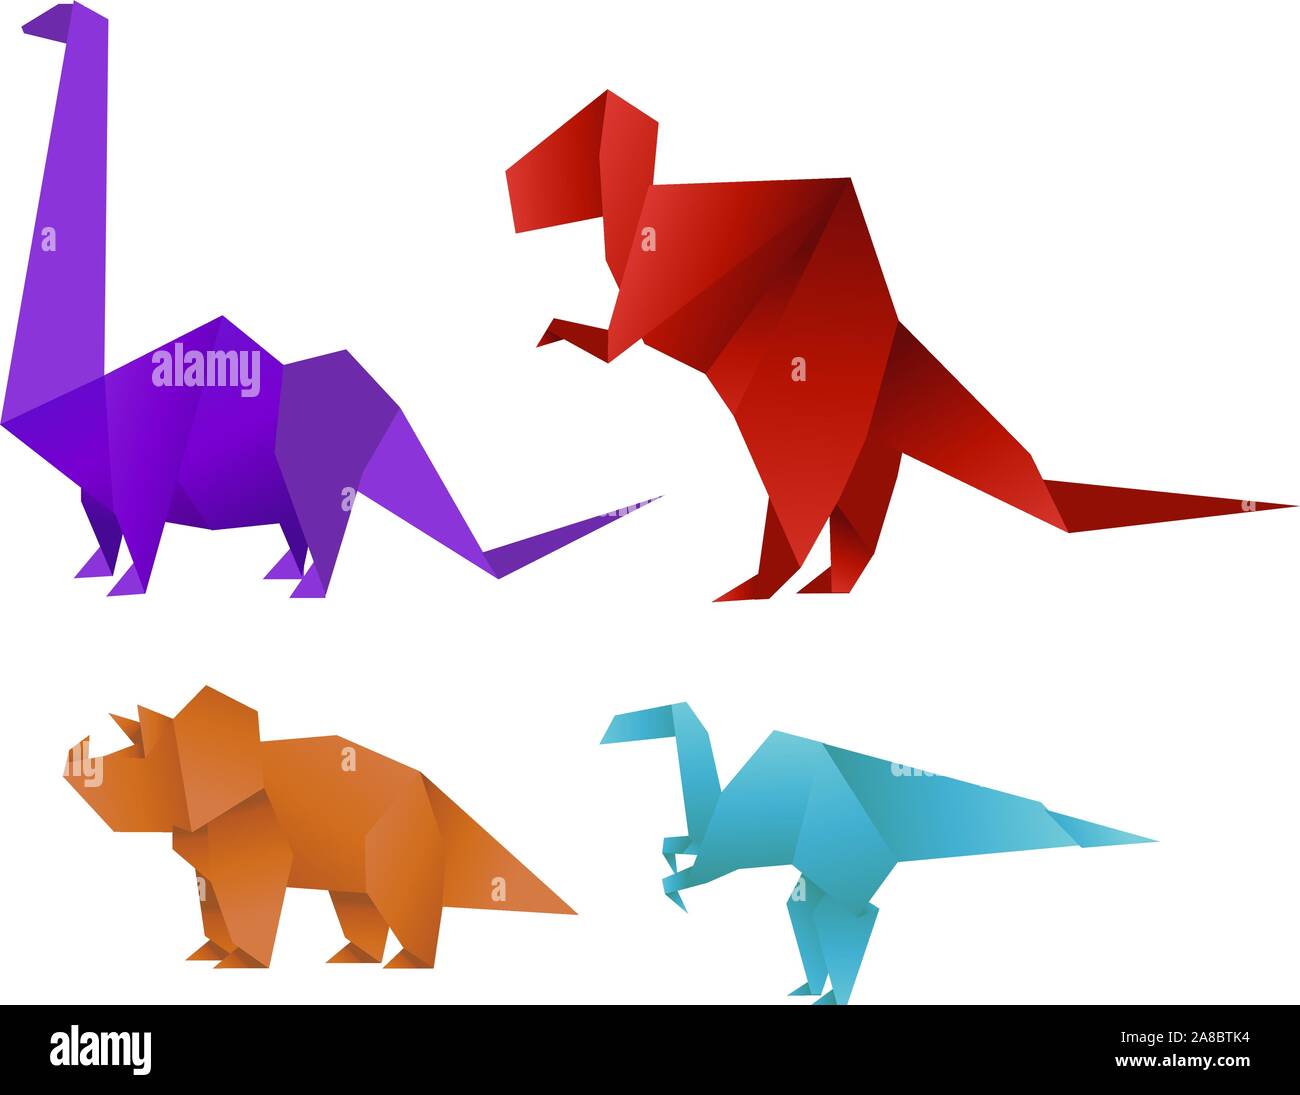 Satz mit vier Farbe Papier Origami Dinosaurier Sammlung Vector Illustration. Stock Vektor